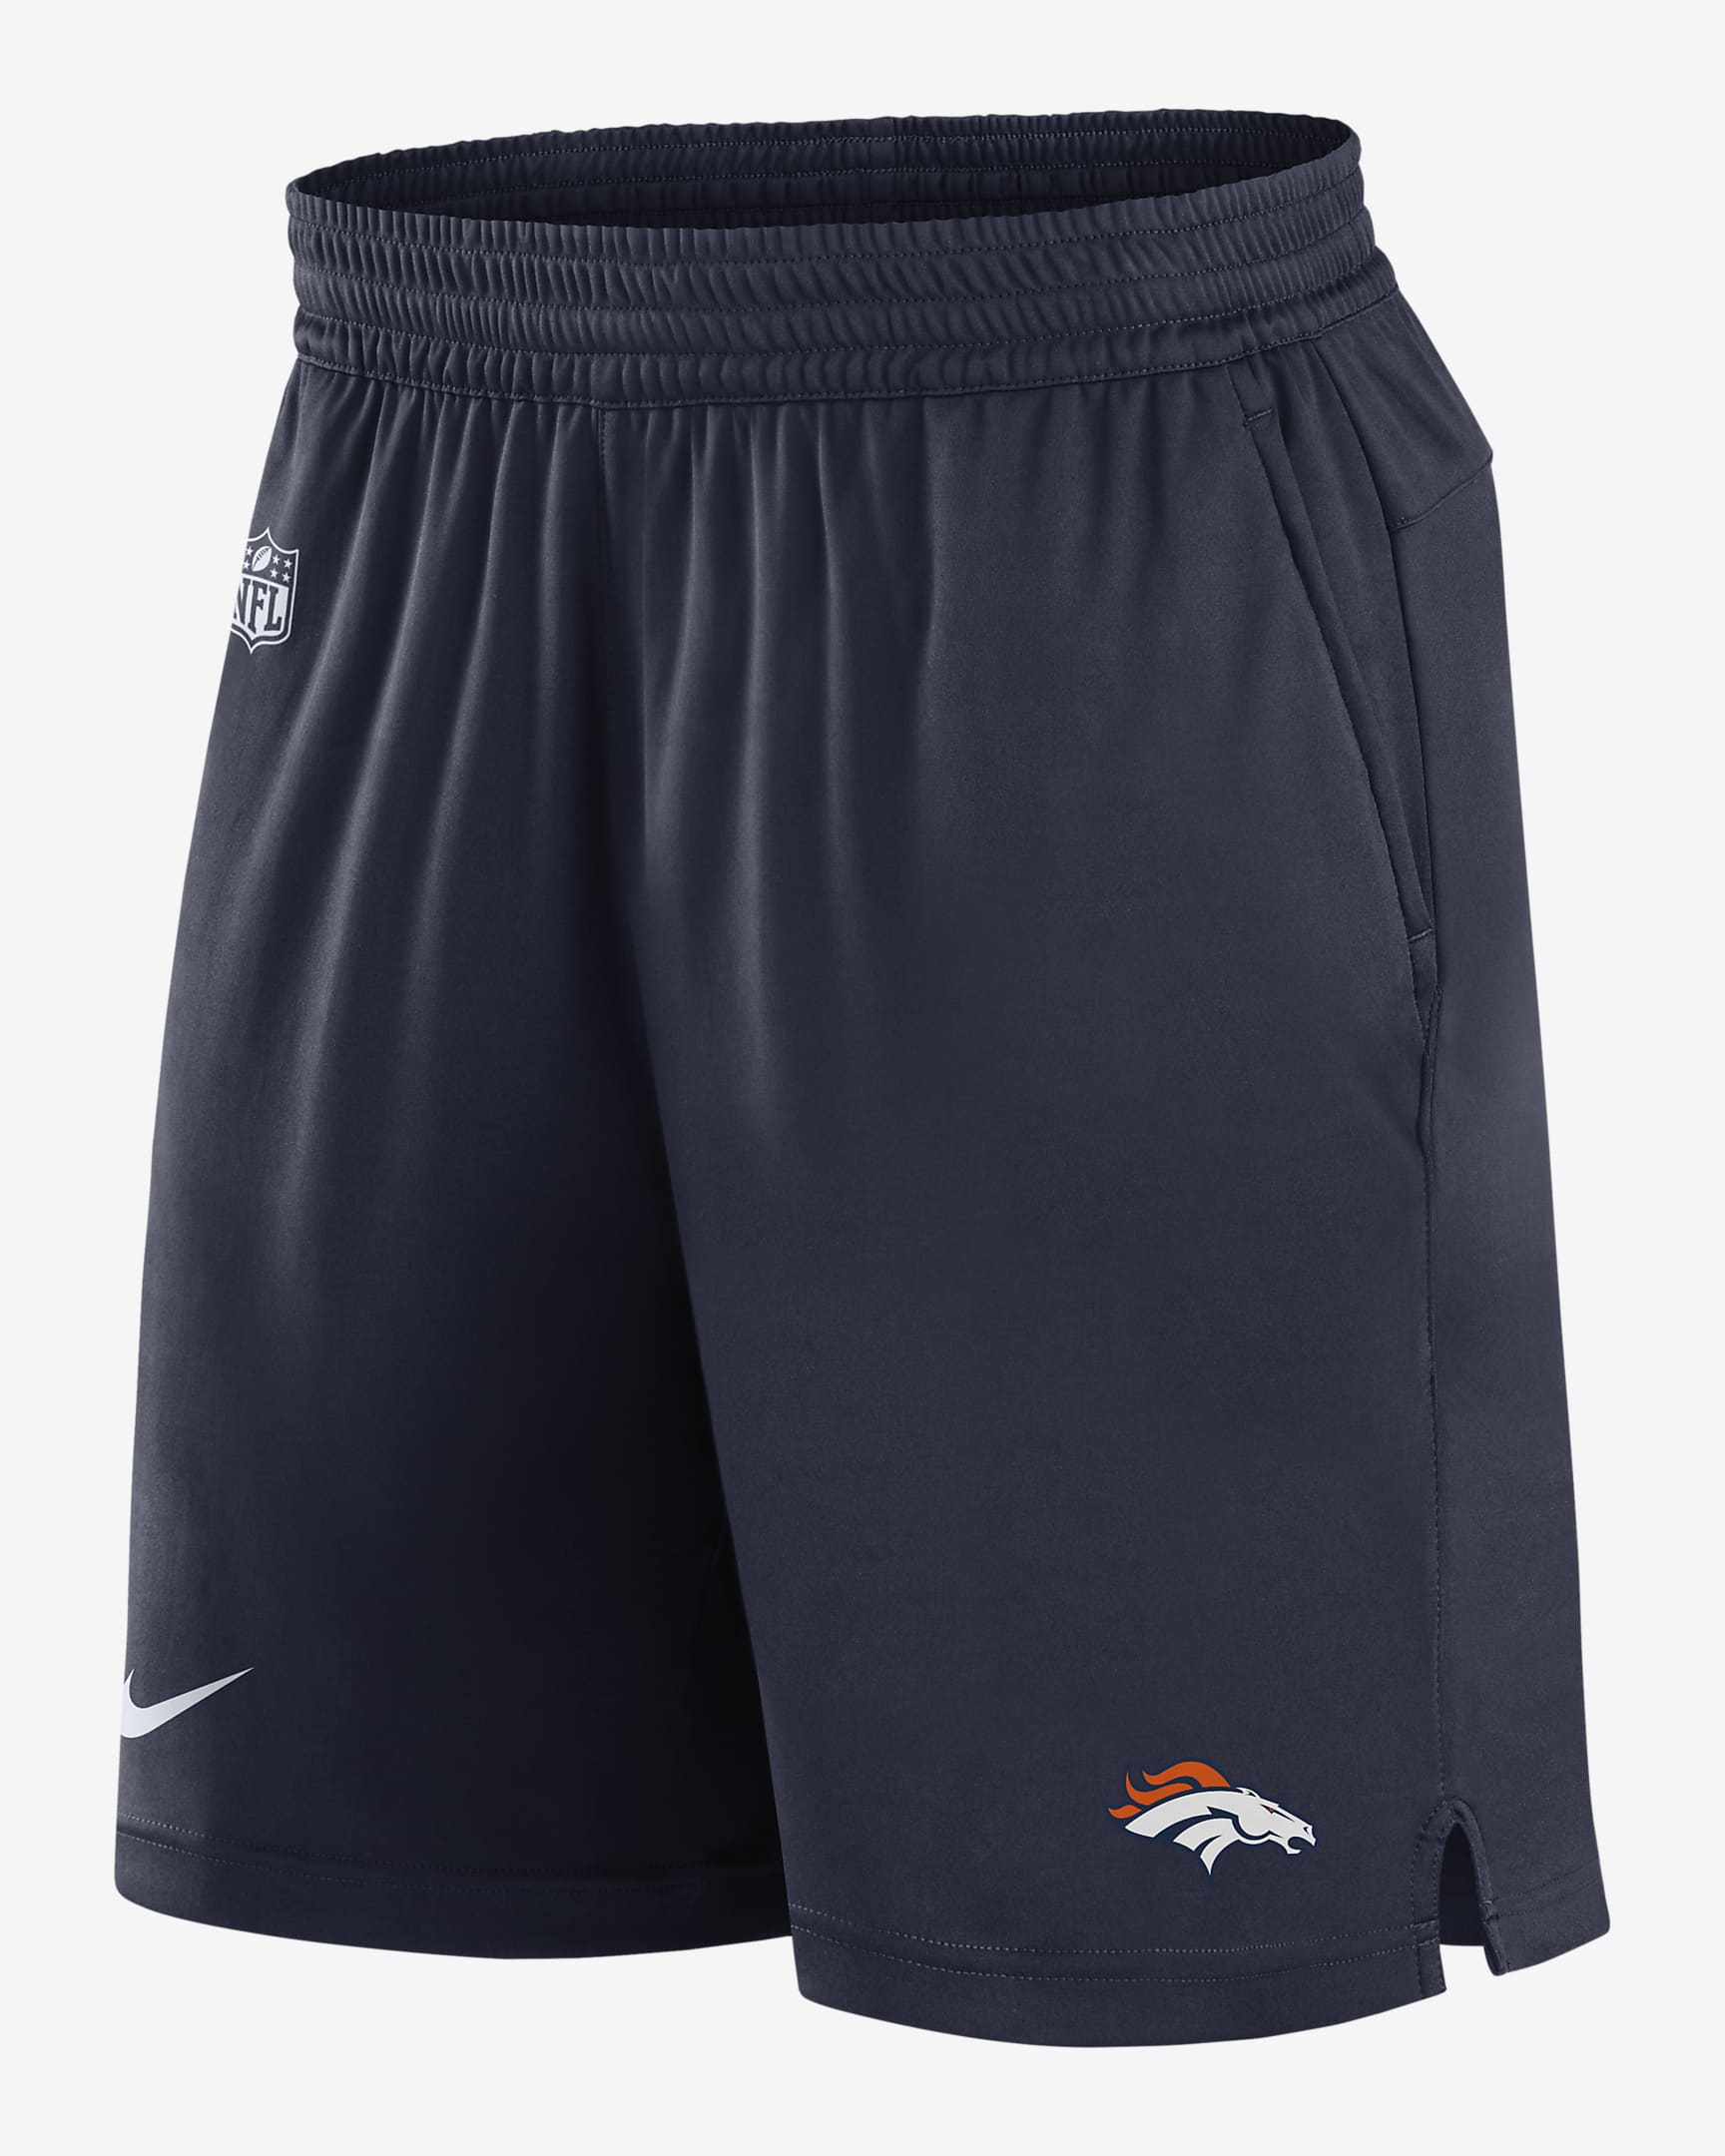 Nike Dri-FIT Sideline (NFL Denver Broncos) Men's Shorts. Nike.com